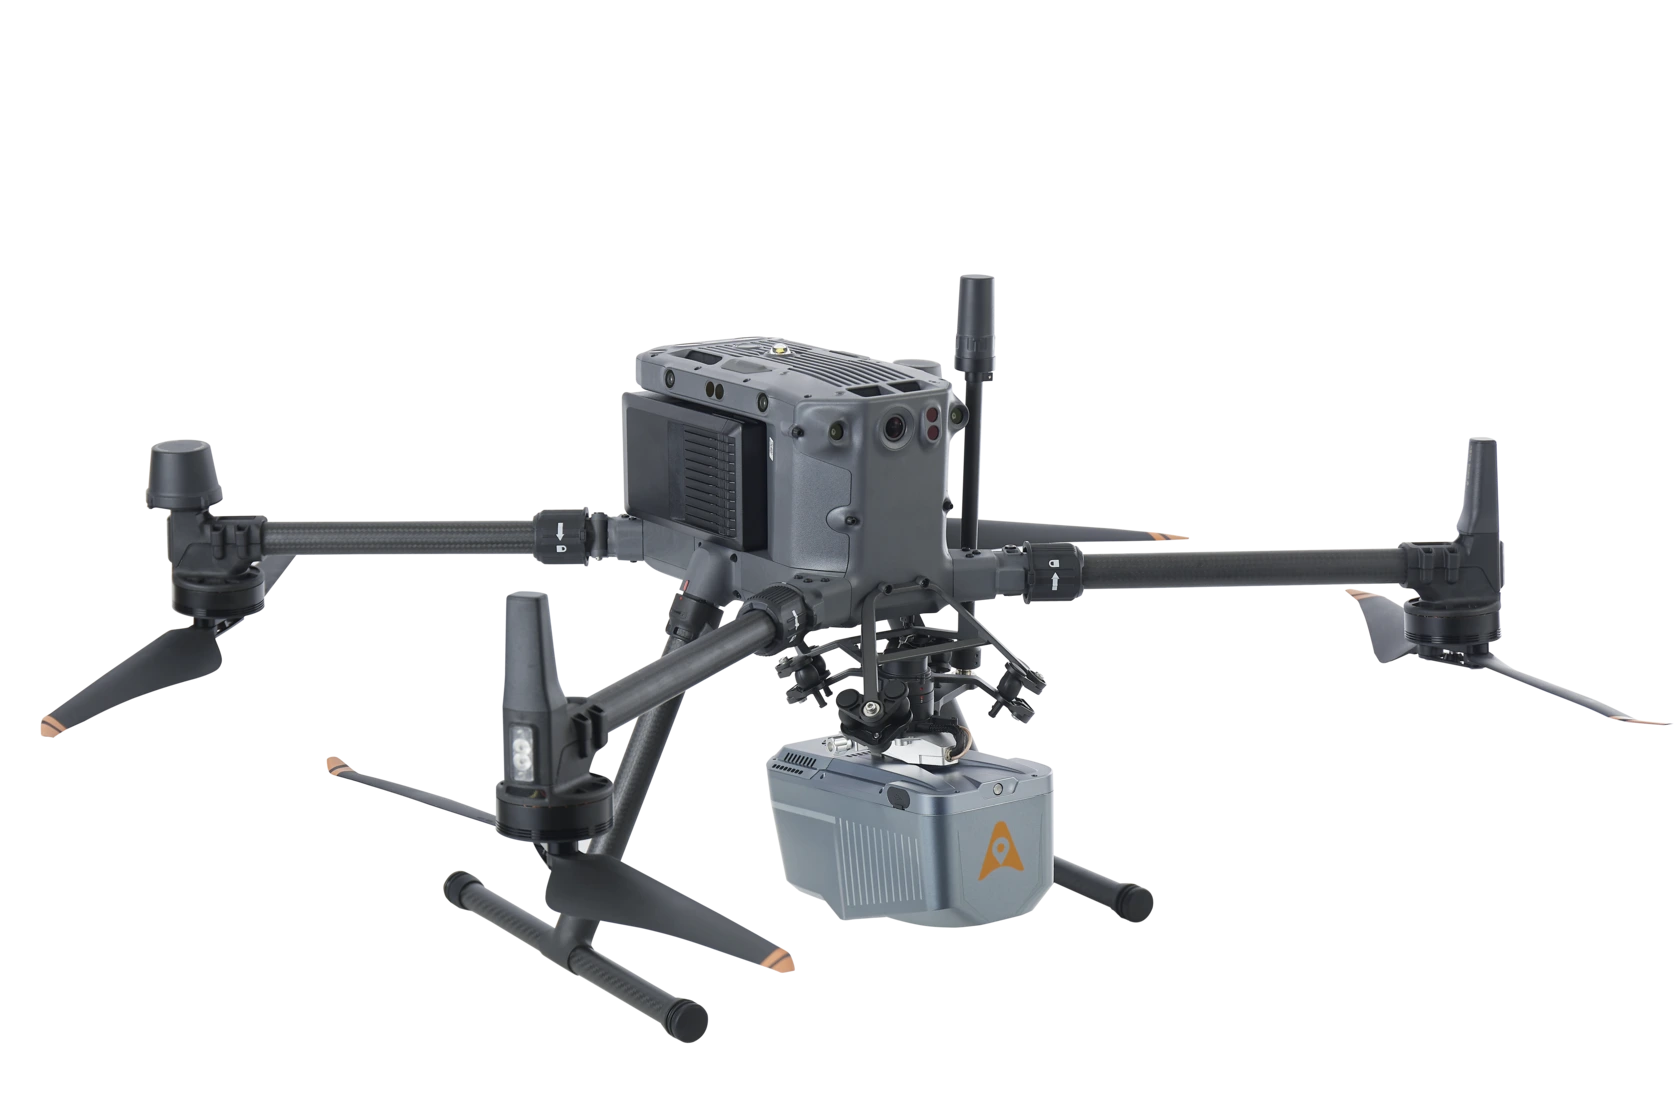 CHCNAV Alpha Air 10 with Skyport UAV LIDAR Mapping